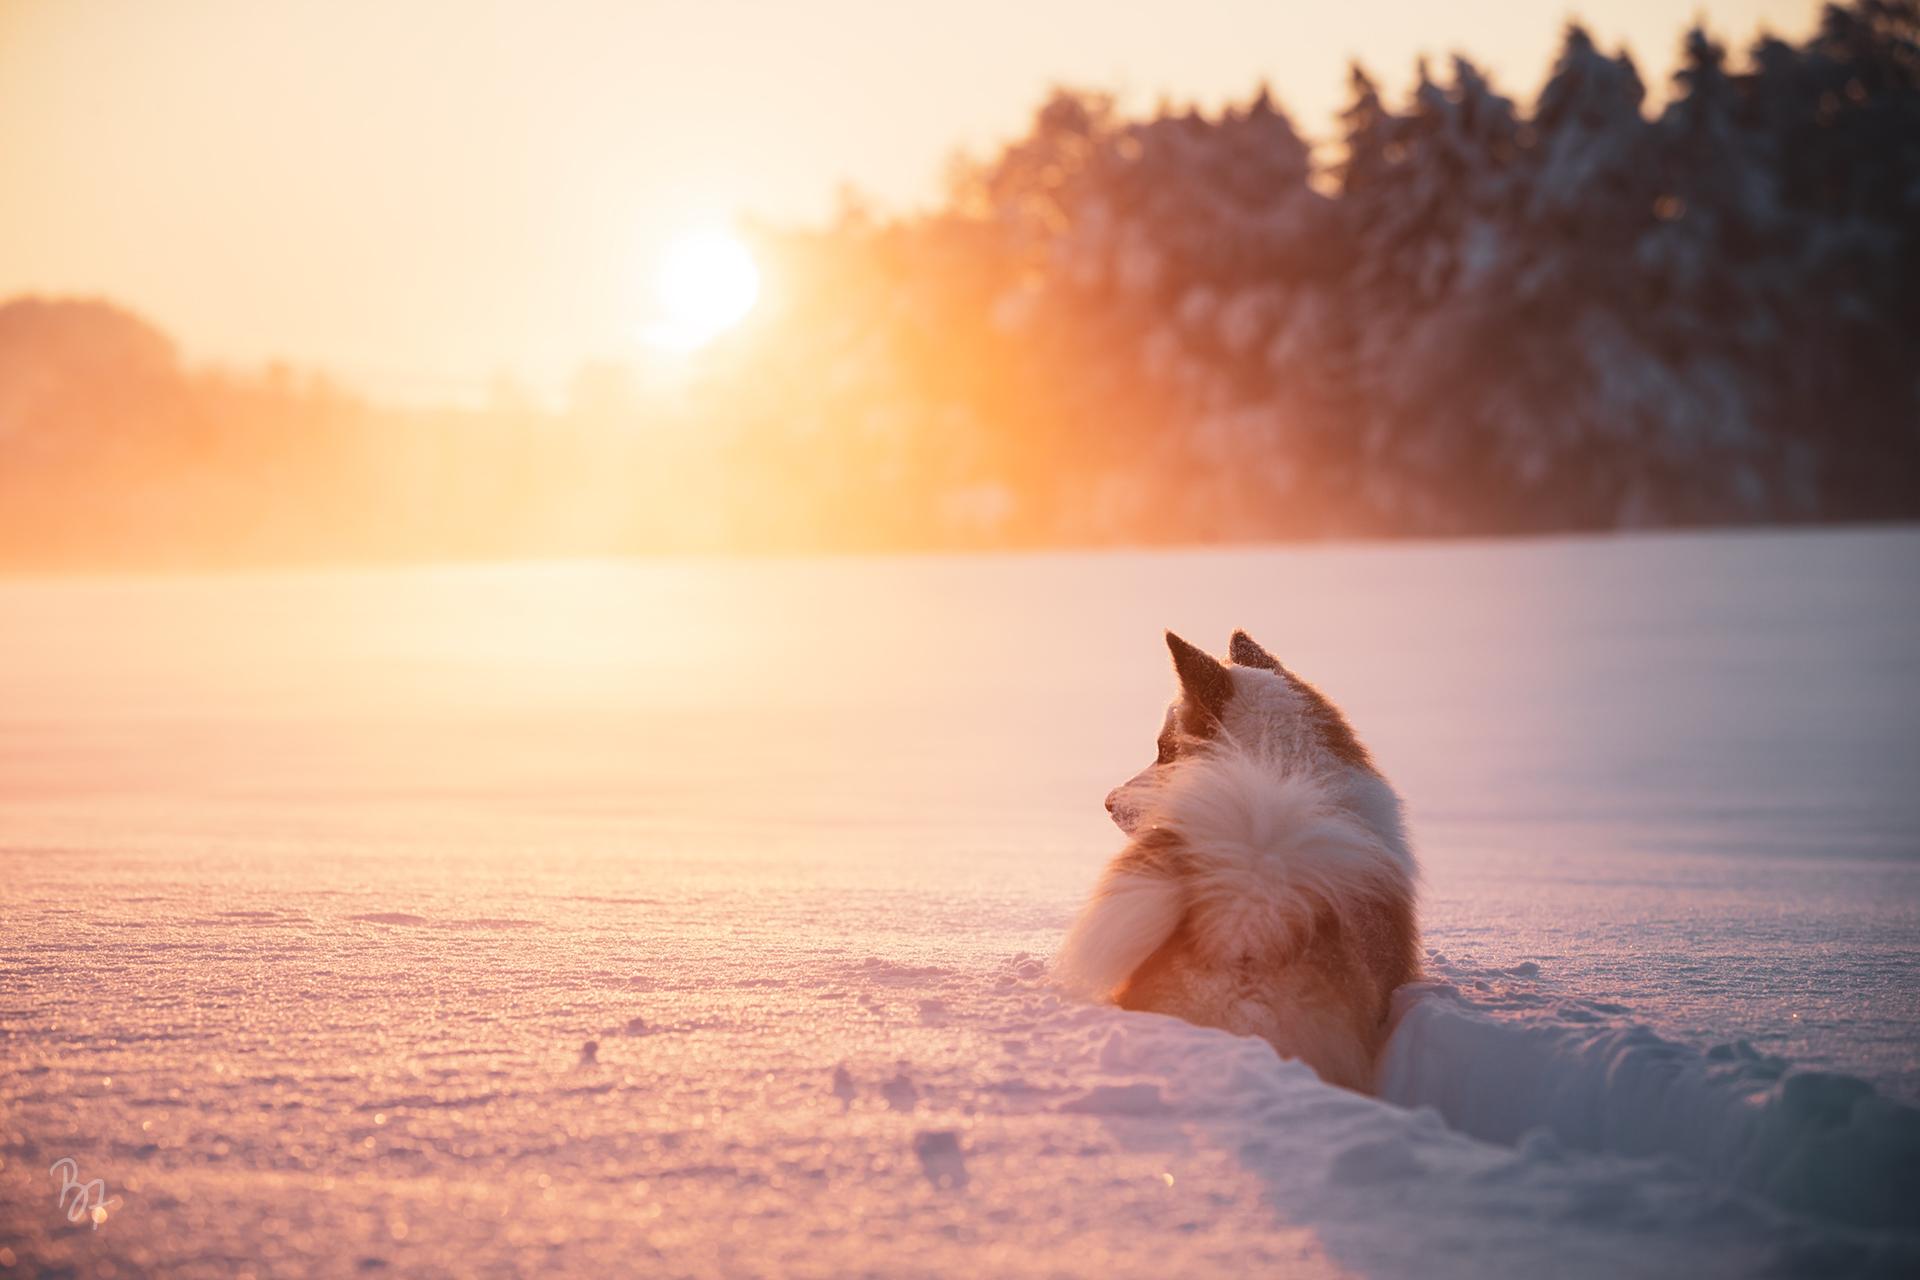 Islandhund Bolti im tiefen Schnee bei Sonnenuntergang